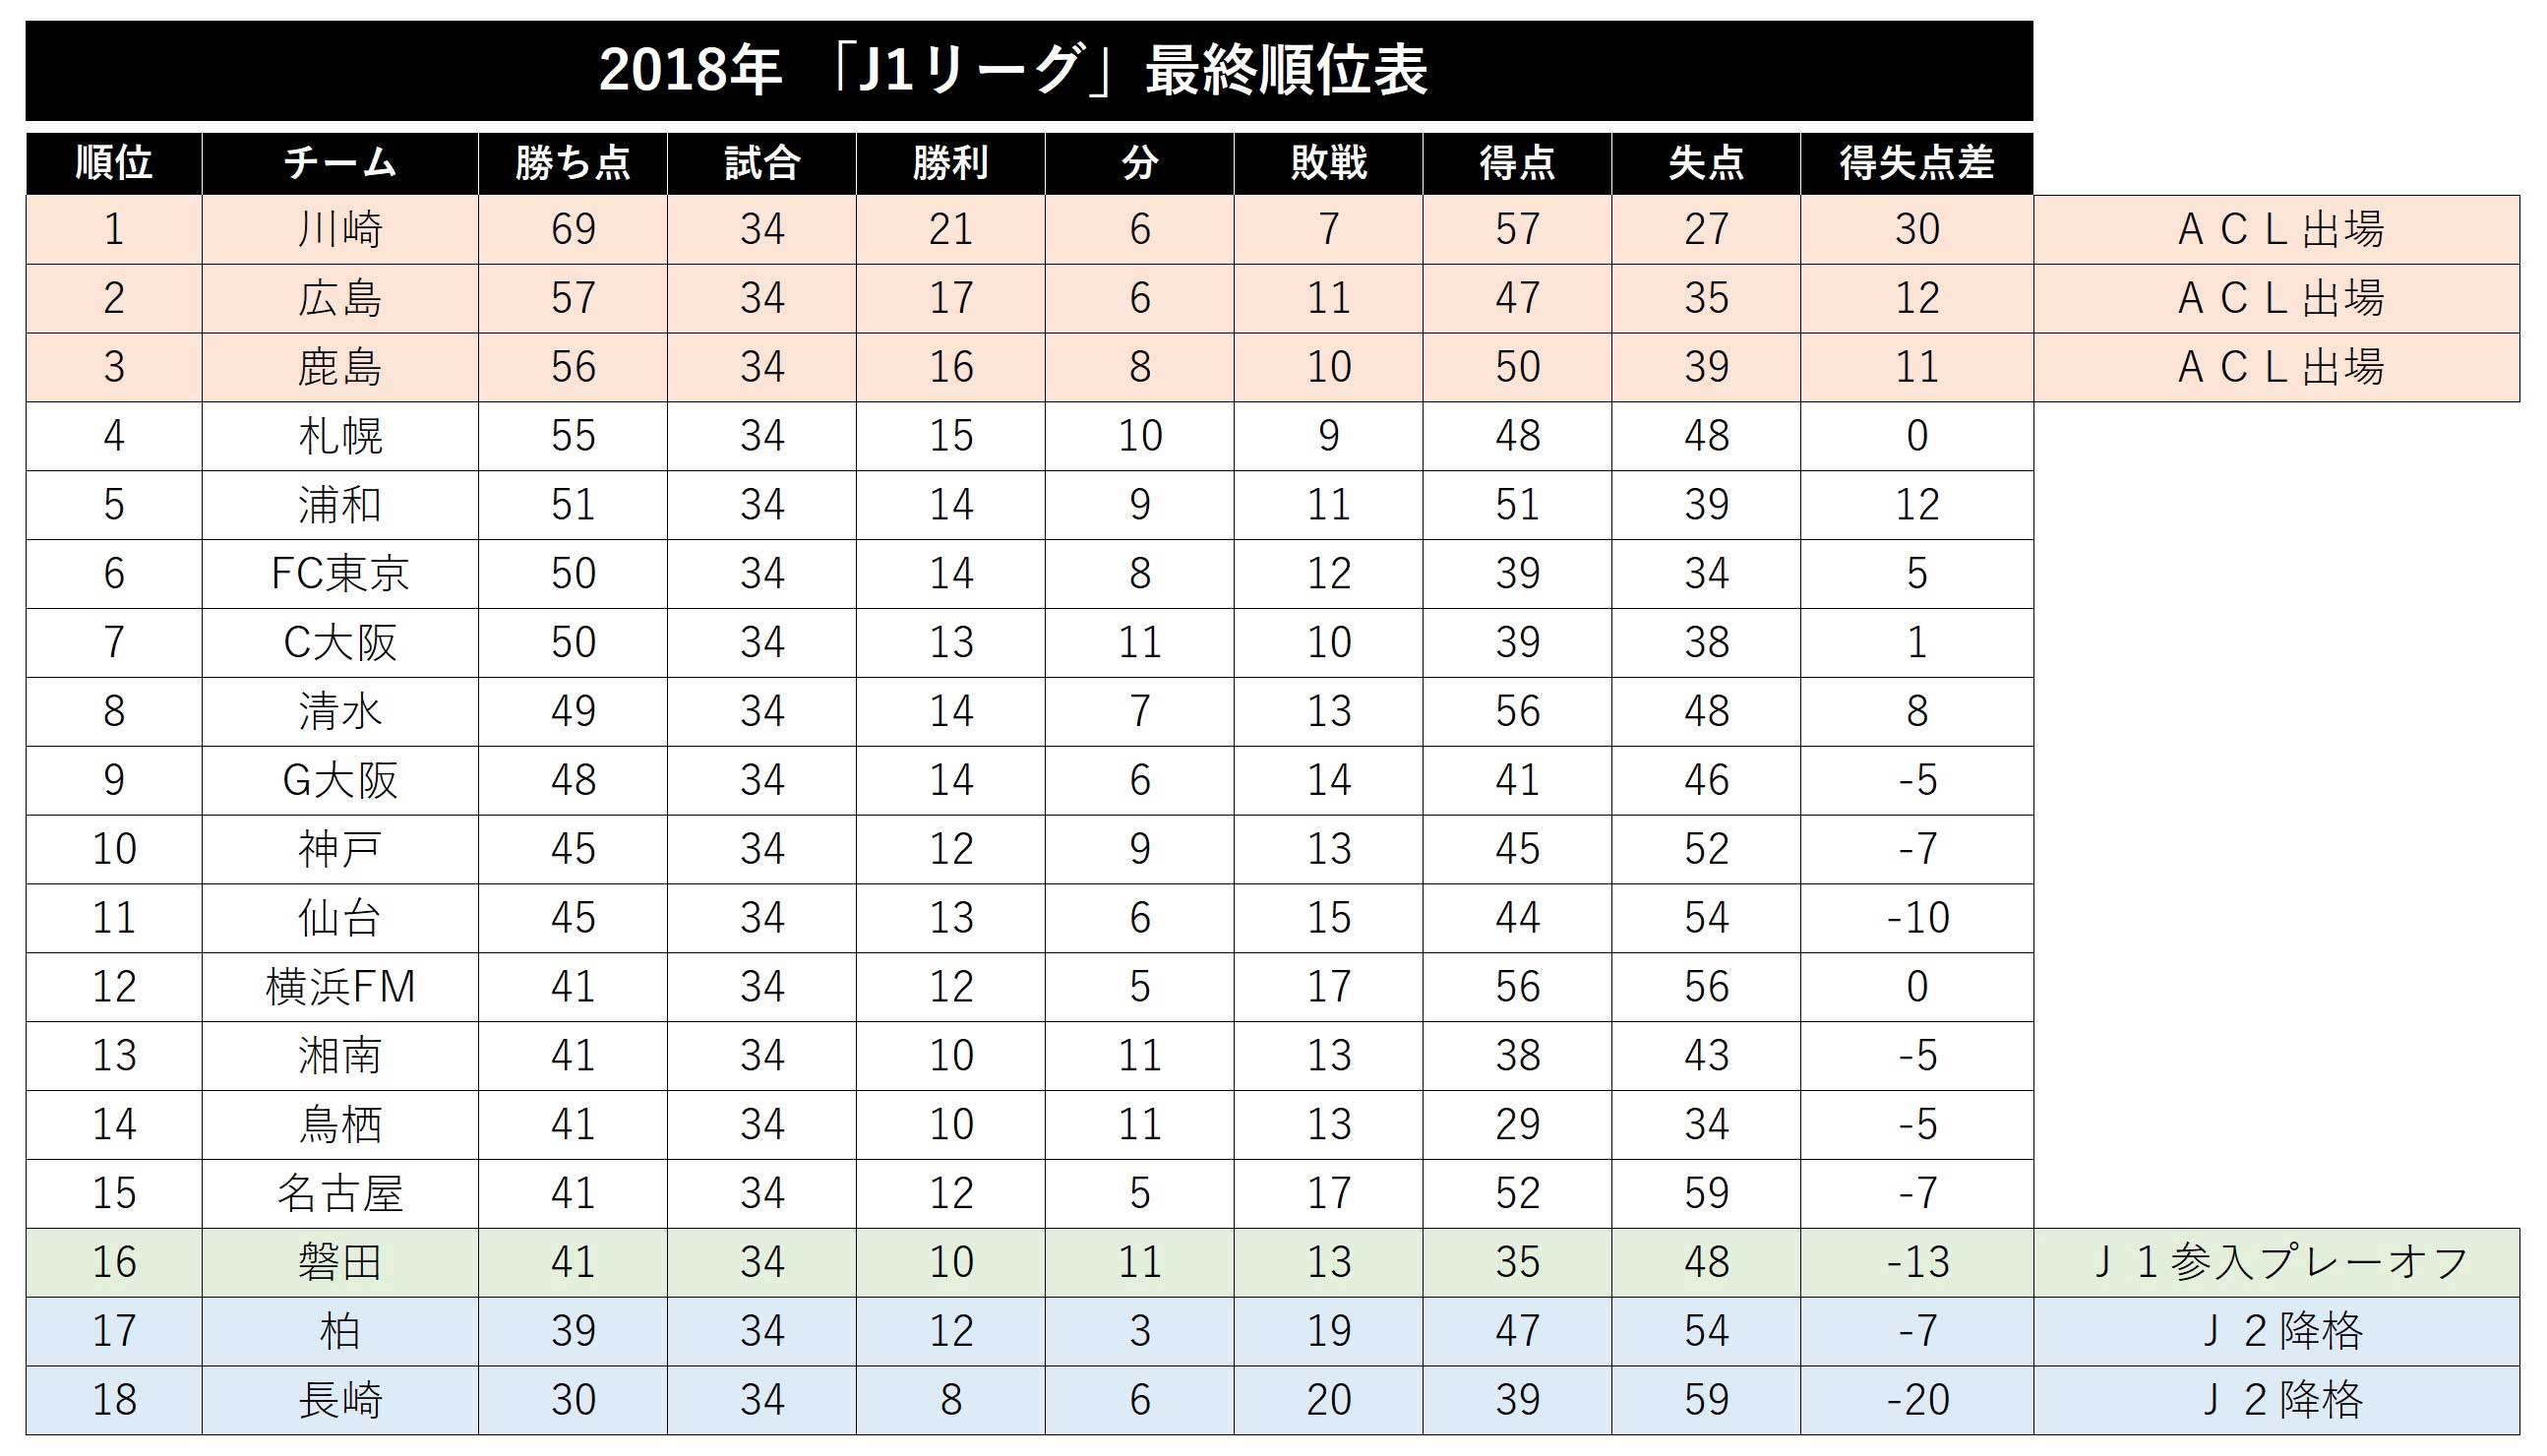 史上最も熾烈な J1残留争い 決着 悪夢の磐田 05年以降の16位で最多 勝ち点41 もpoへ フットボールゾーン 2